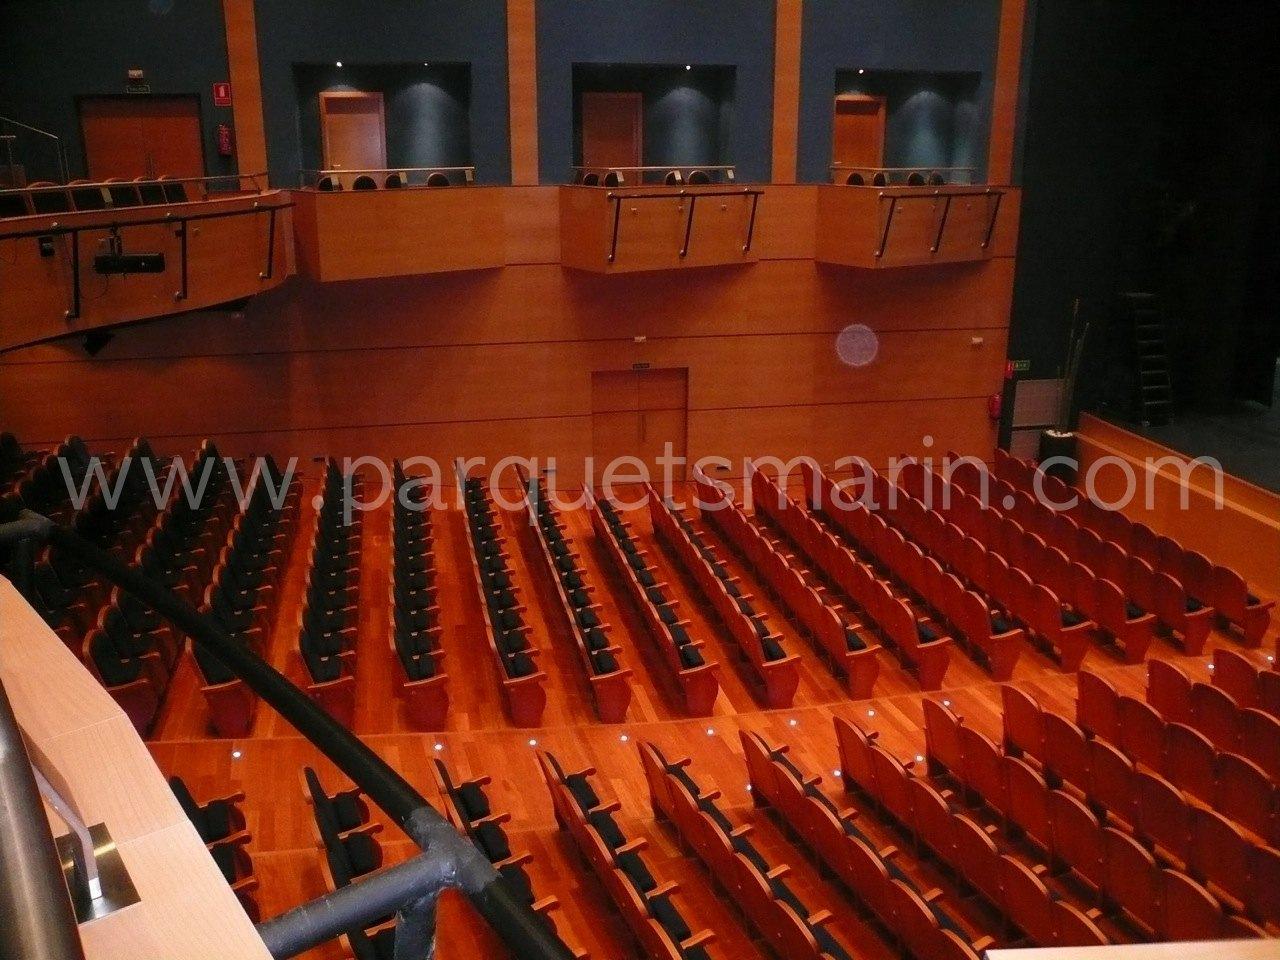 Parquets Marín teatro